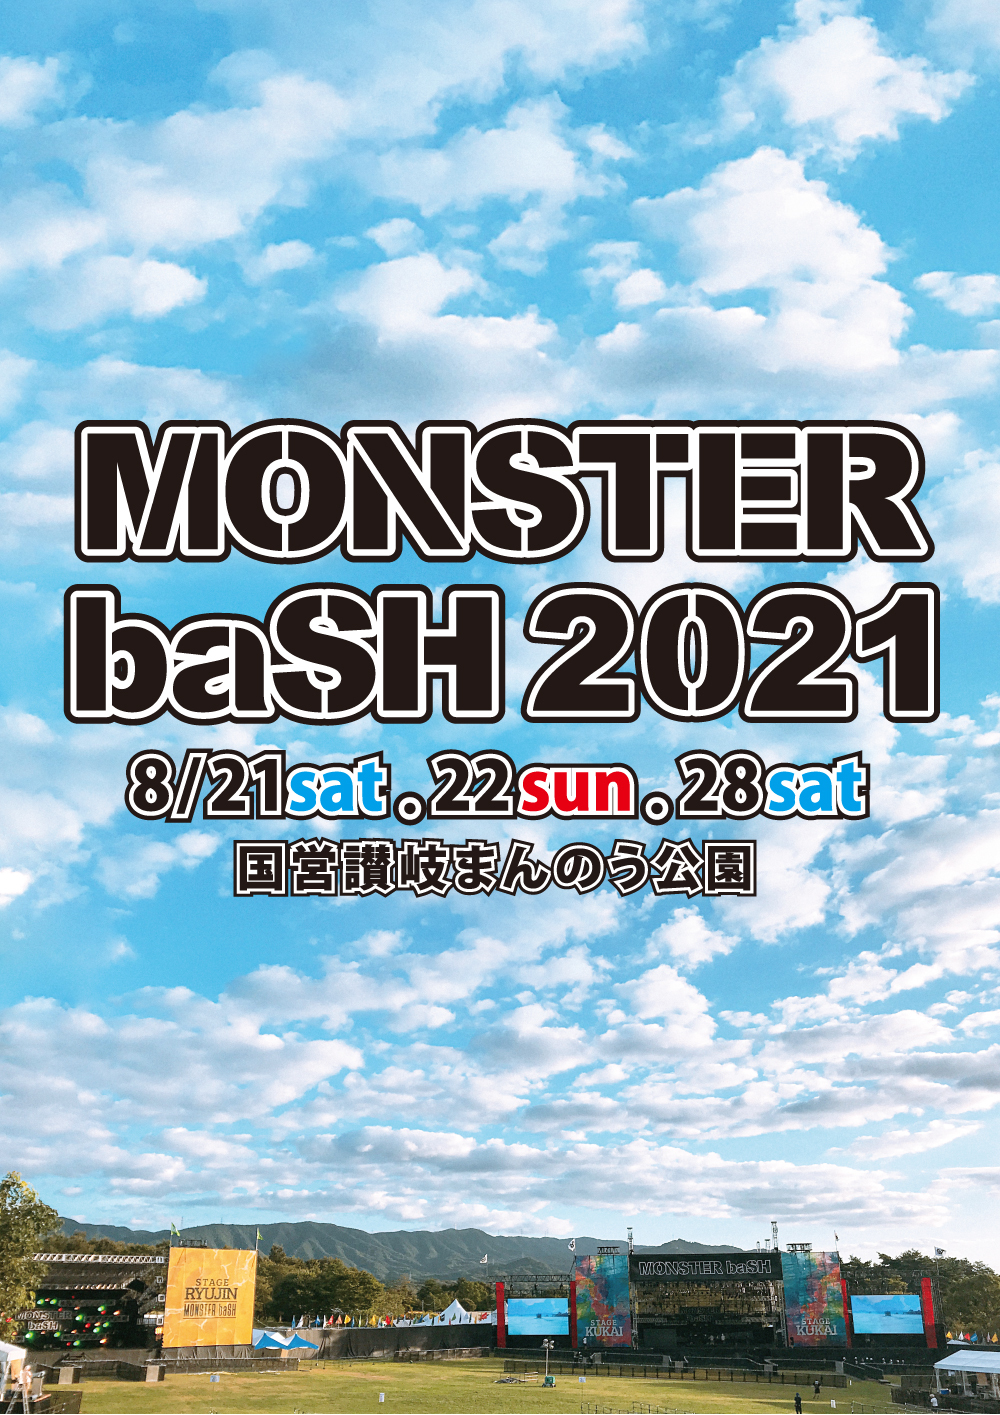 『MONSTER baSH 2021』